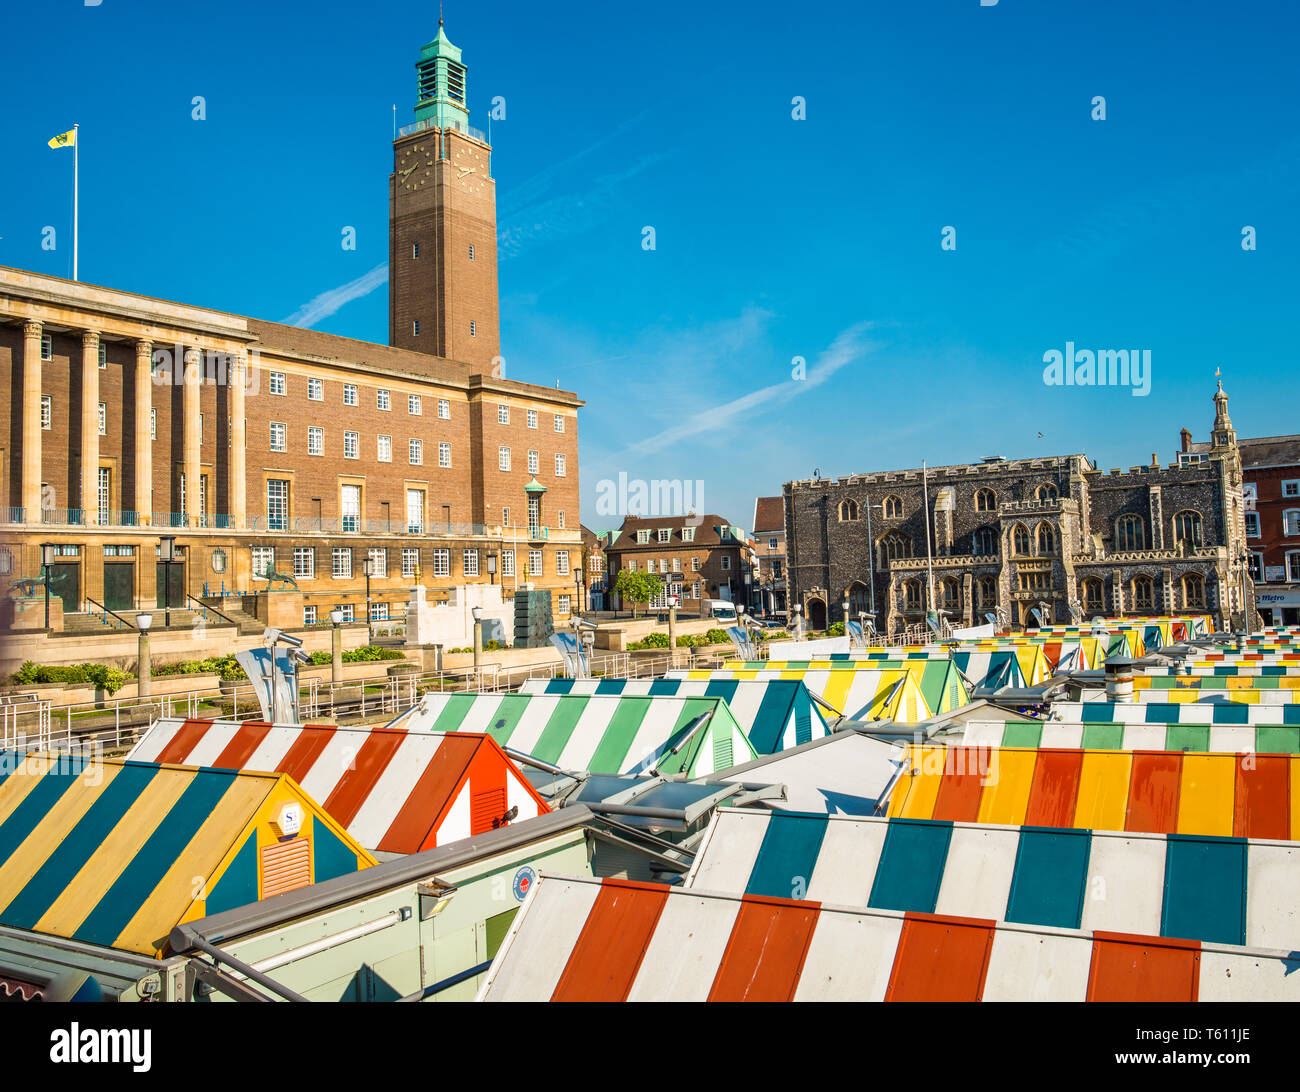 Norwich-Markt und Rathaus, Markt Platz, Norwich, Norfolk, England, Vereinigtes Königreich Stockfoto